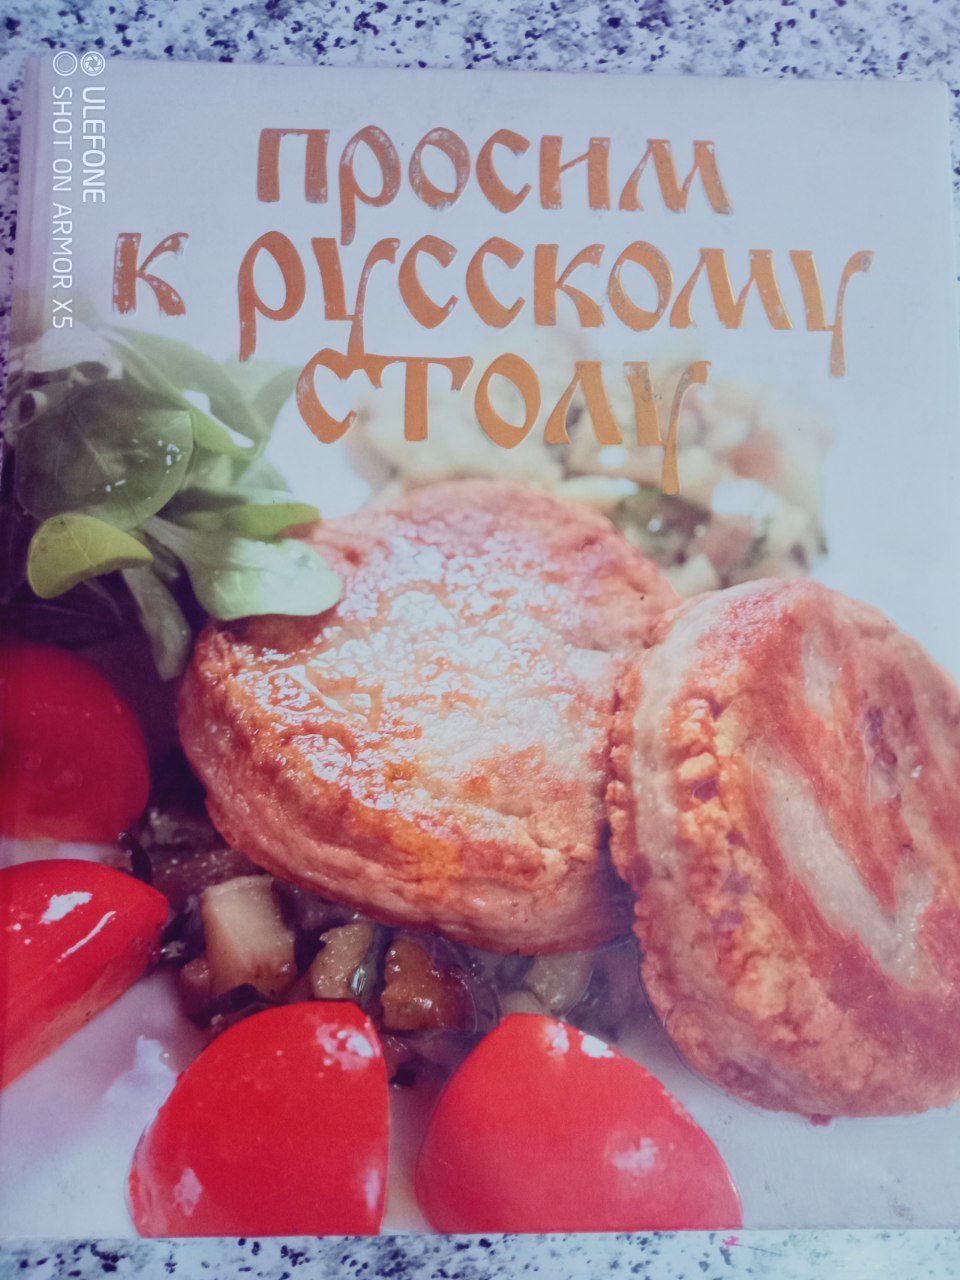 Продаётся книга, рецепты русской кухни.